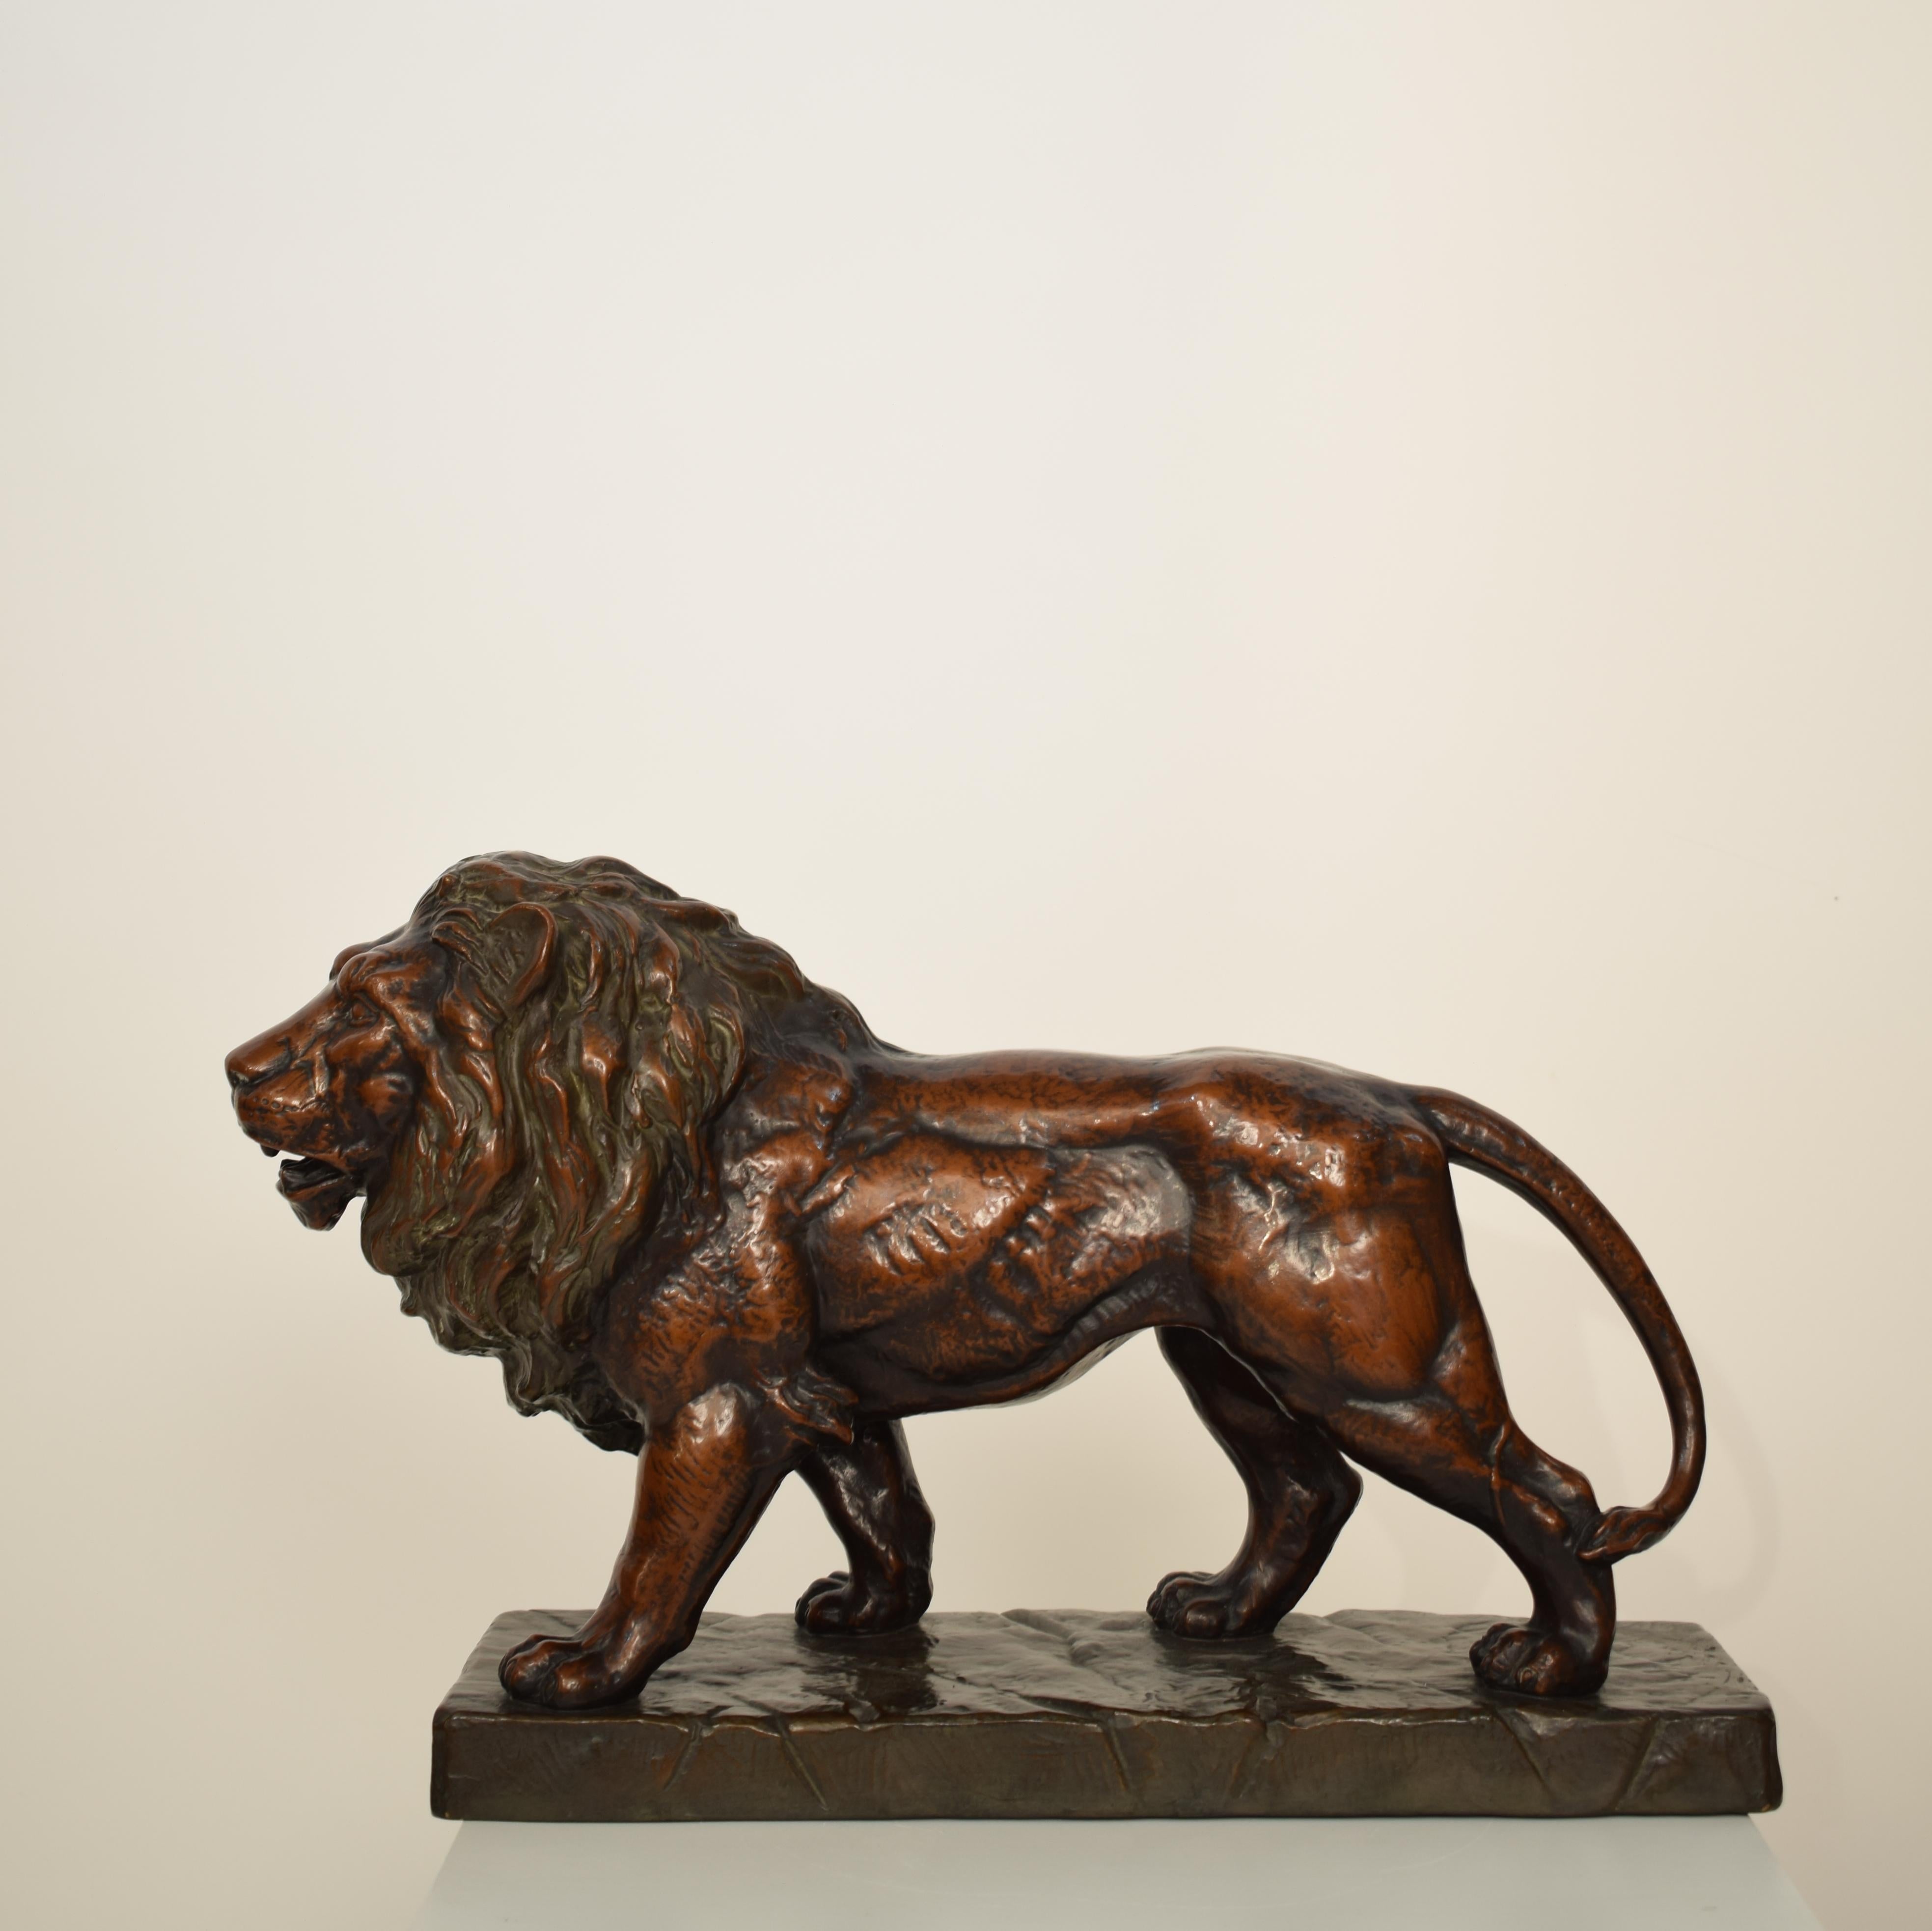 Cette très belle sculpture allemande Art Déco de lion en céramique, terre cuite et finition cuivre a été réalisée dans les années 1930 par EJM.
Il est en parfait état d'ancienneté, sans éclats et avec une belle patine.
Une pièce unique qui